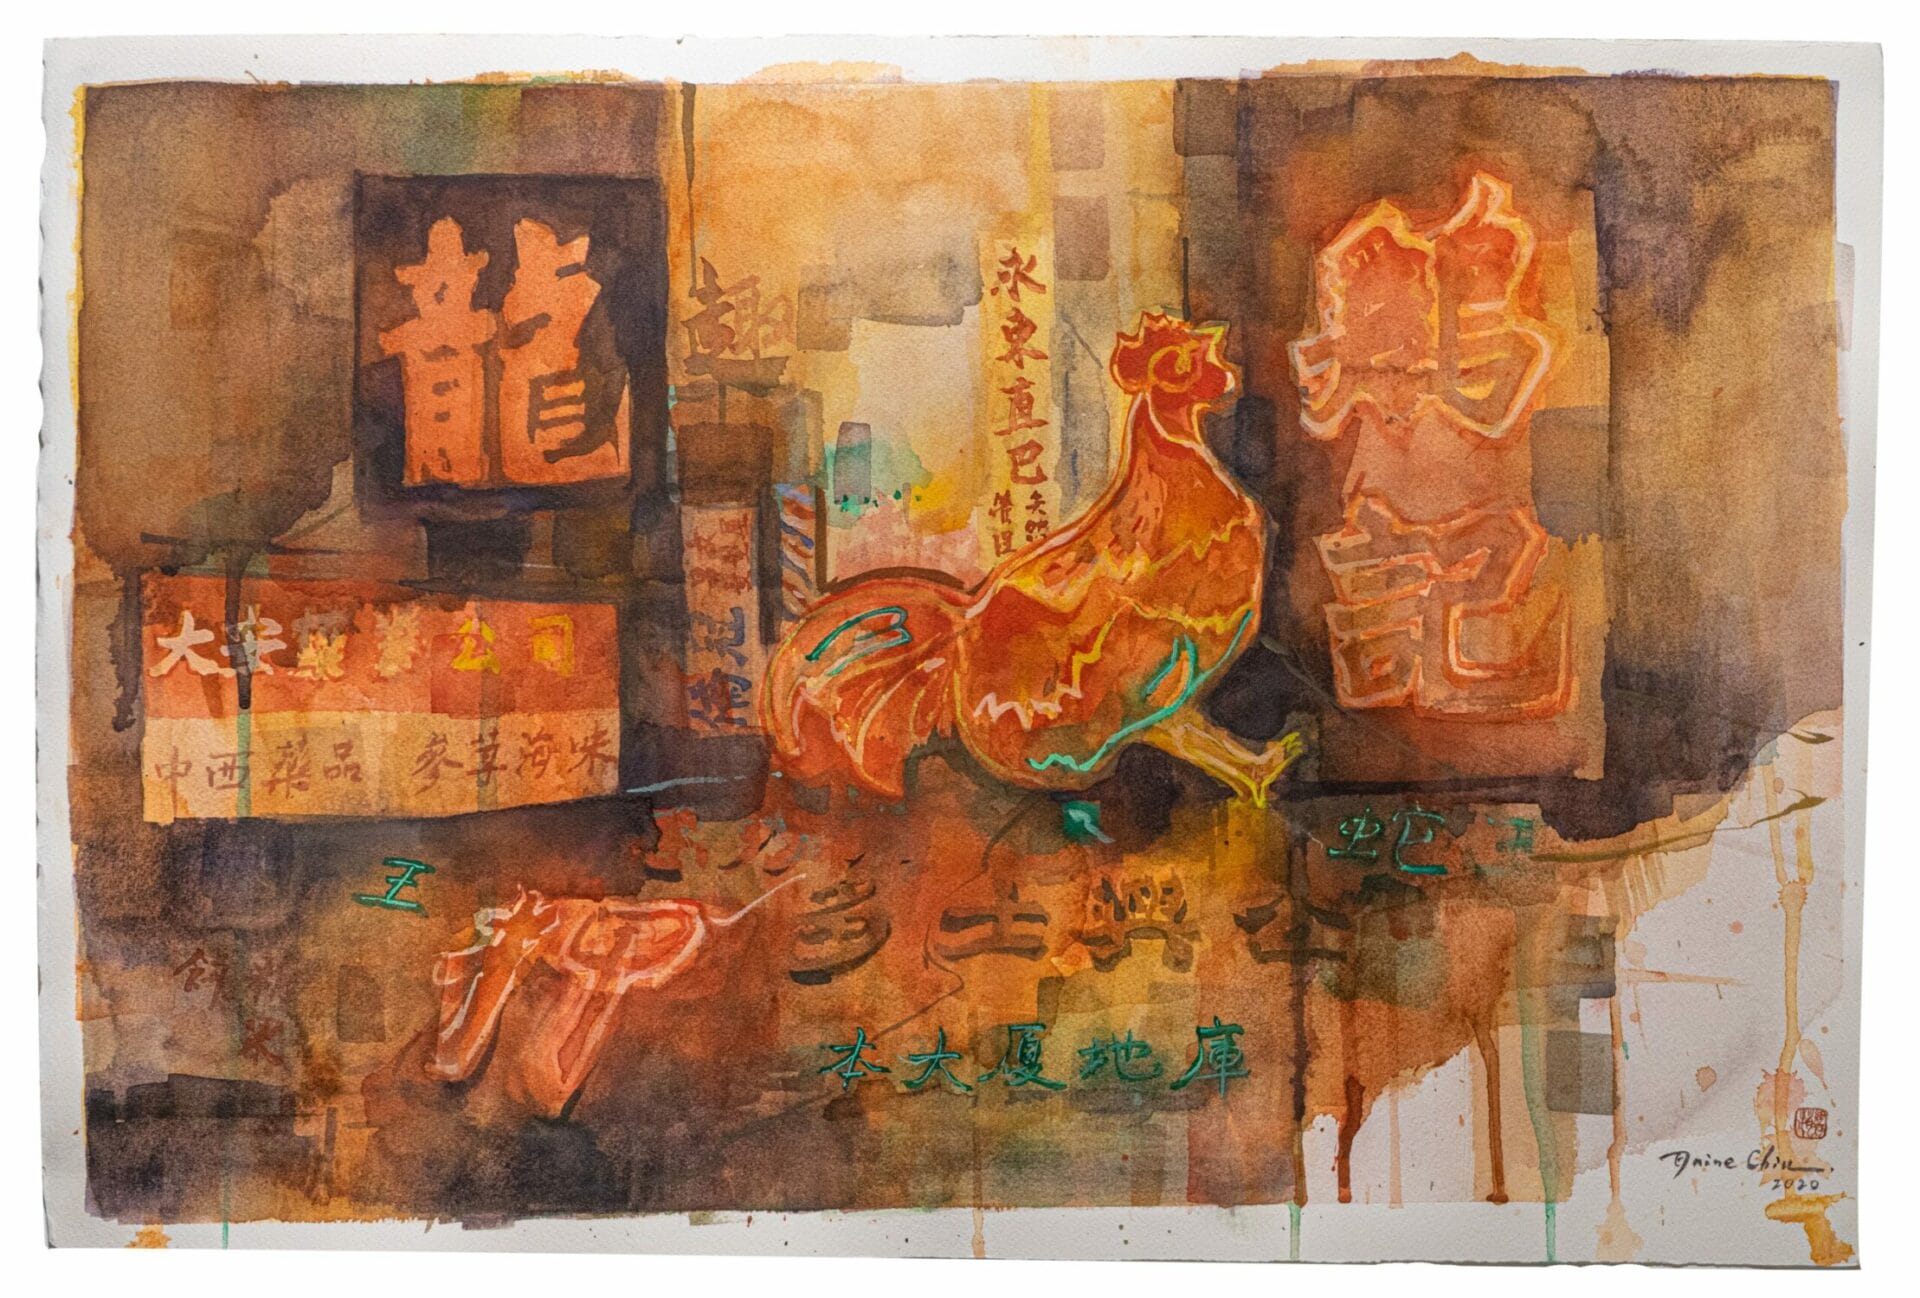 Elaine Chiu, Fallen Neons ????, 2020, Watercolor on paper, 38 by 57 cm